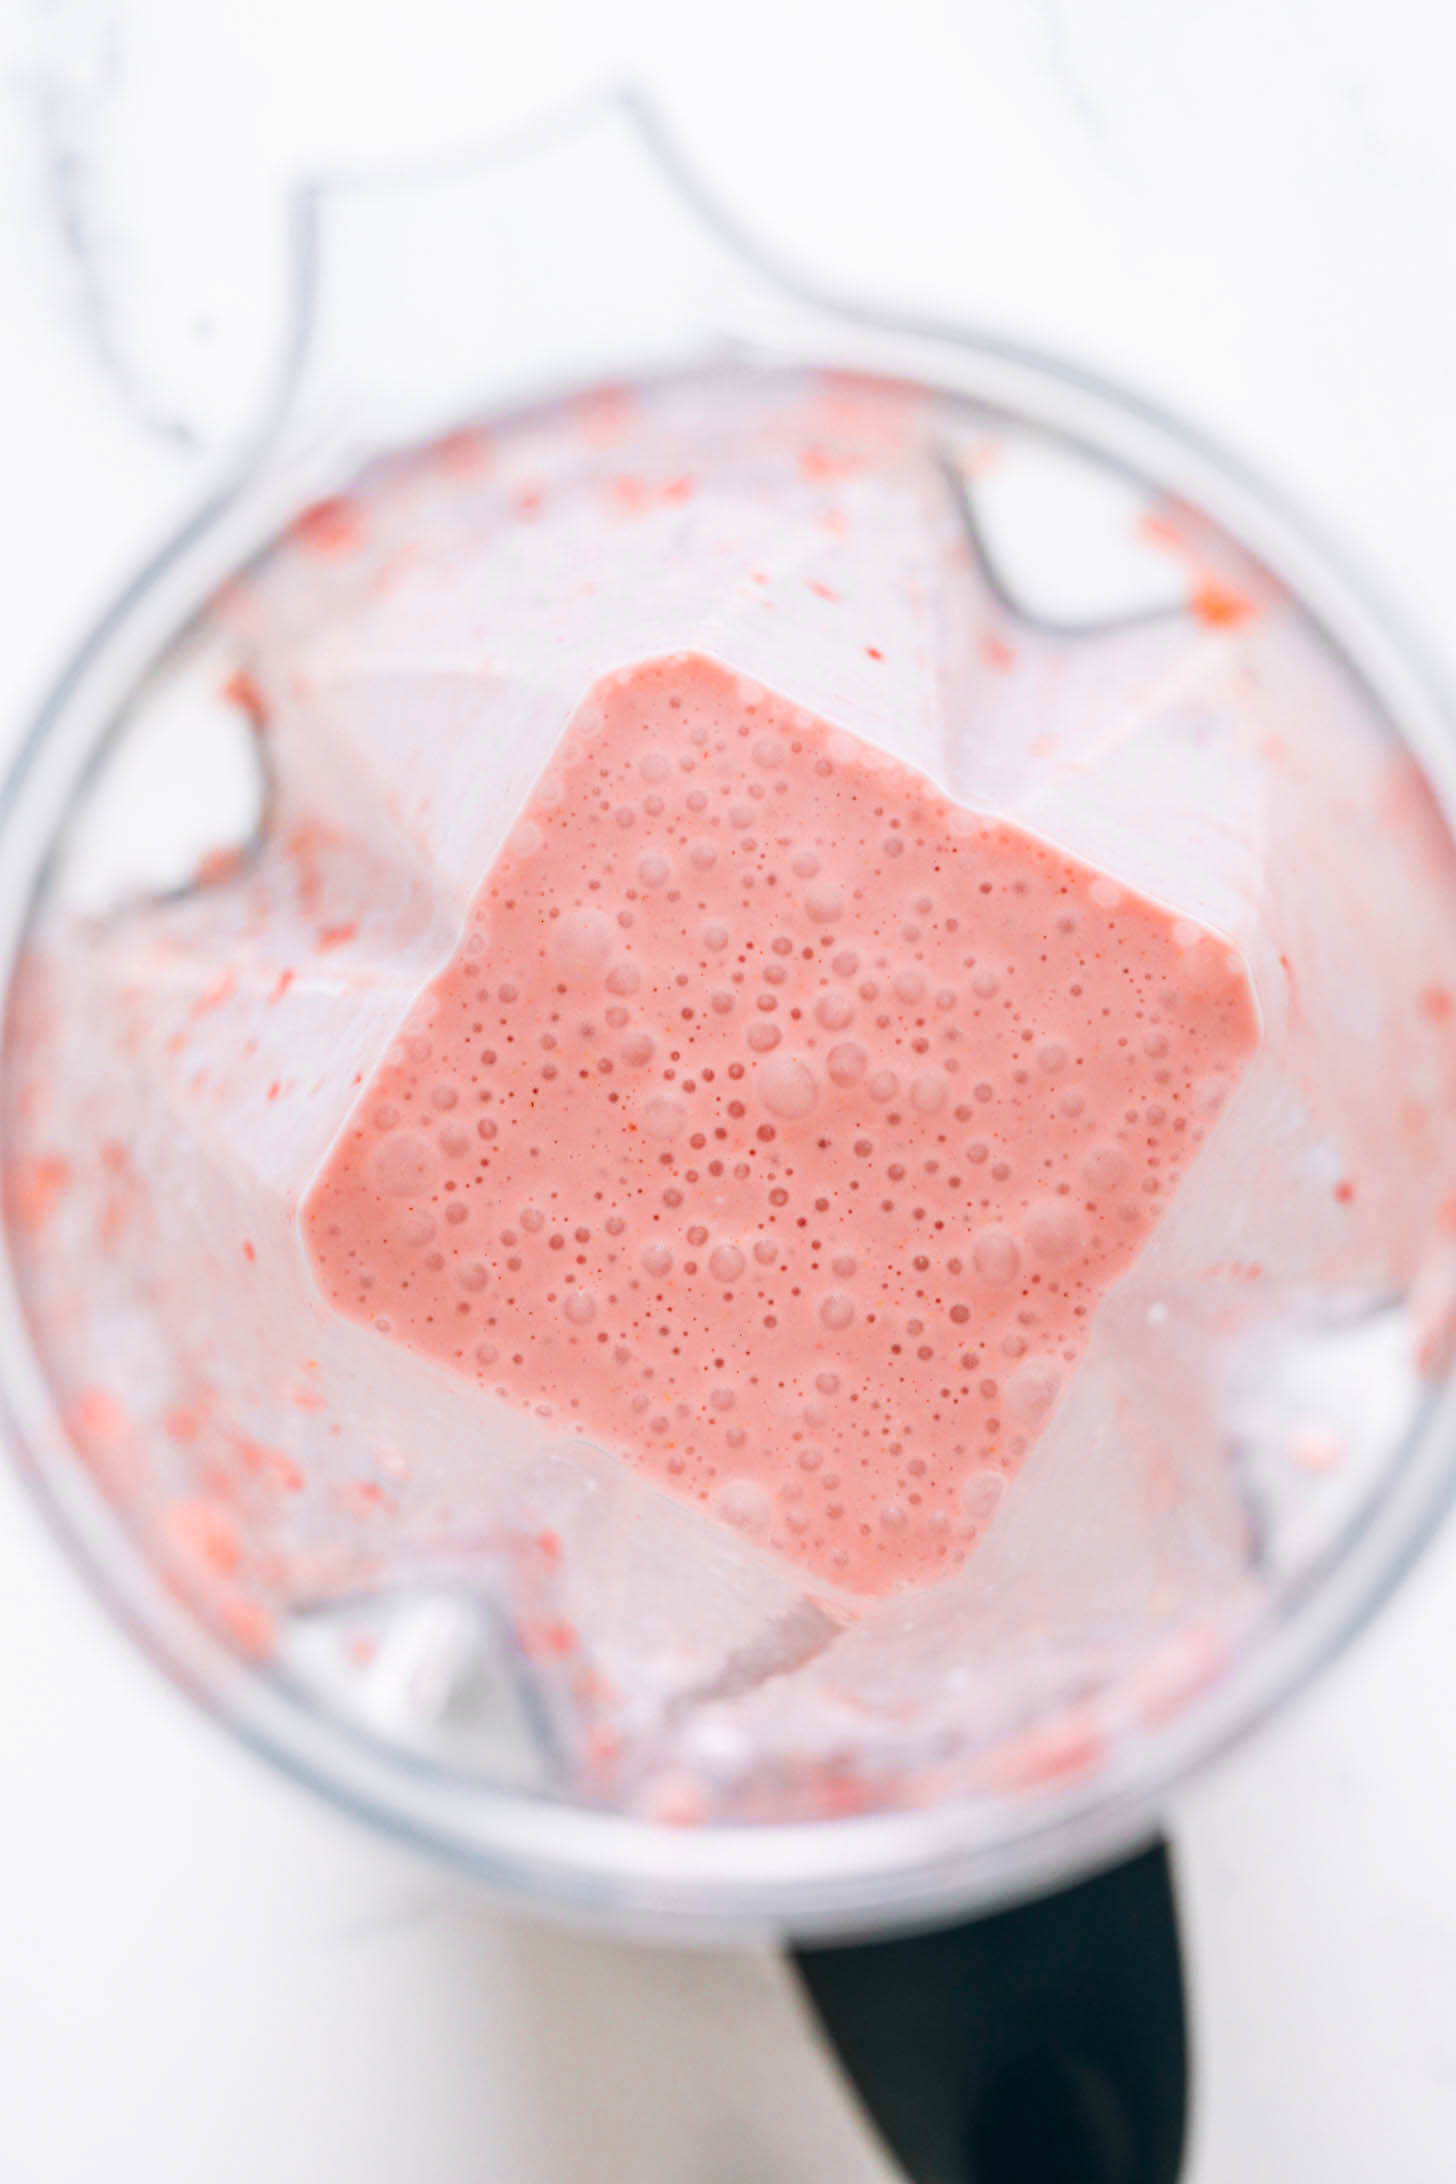 Light pink strawberry milkshake in a Vitamix blender